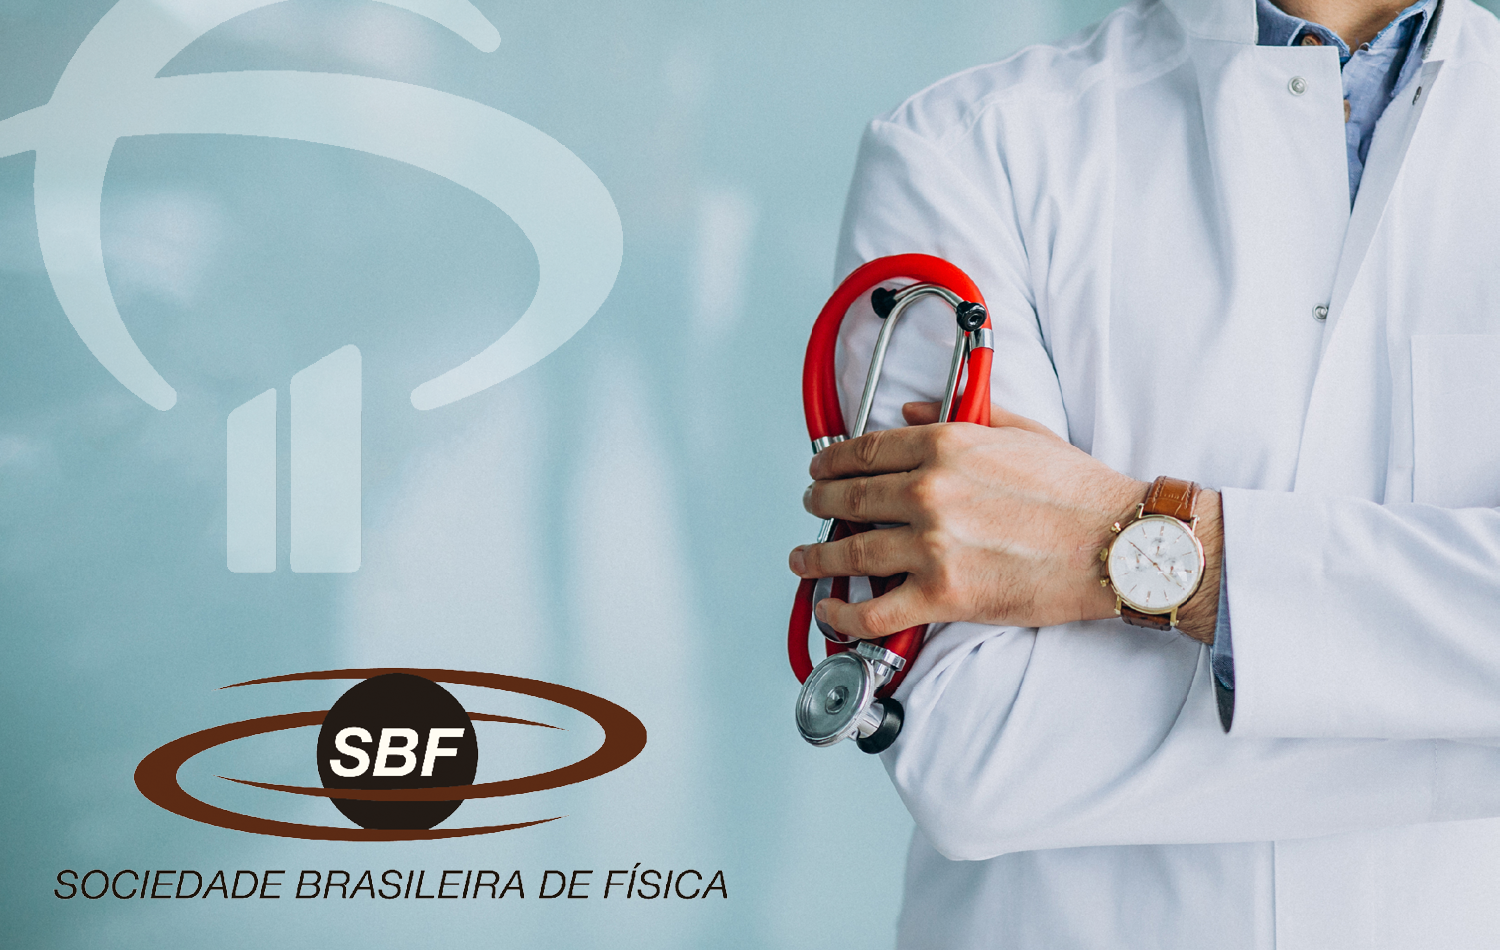 Mensagem da SBF sobre o plano de saúde Bradesco